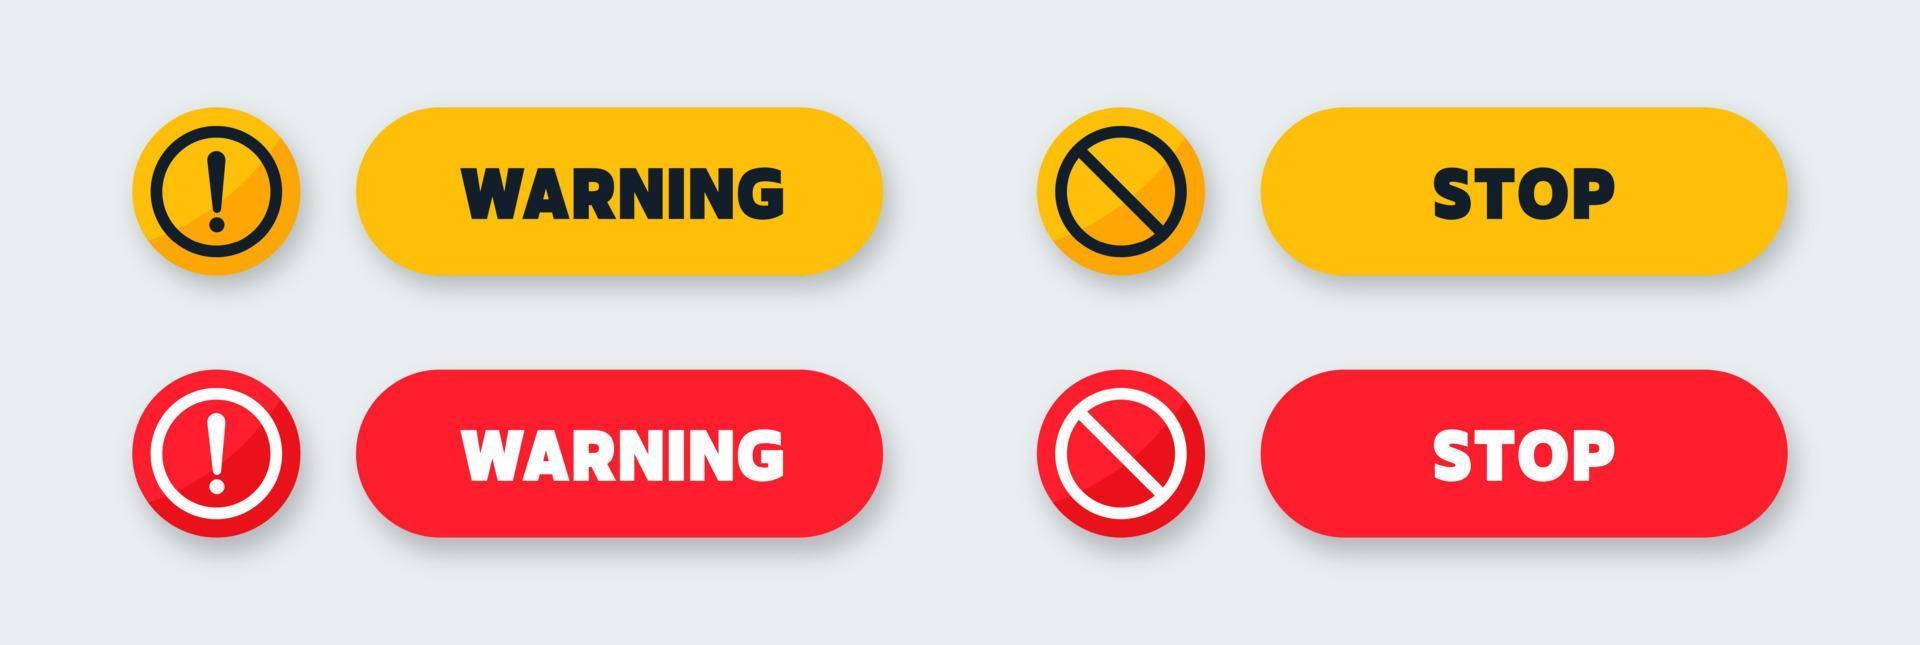 botão de aviso e parada nas cores vermelha e amarela. ilustração vetorial de sinais de exclamação. vetor